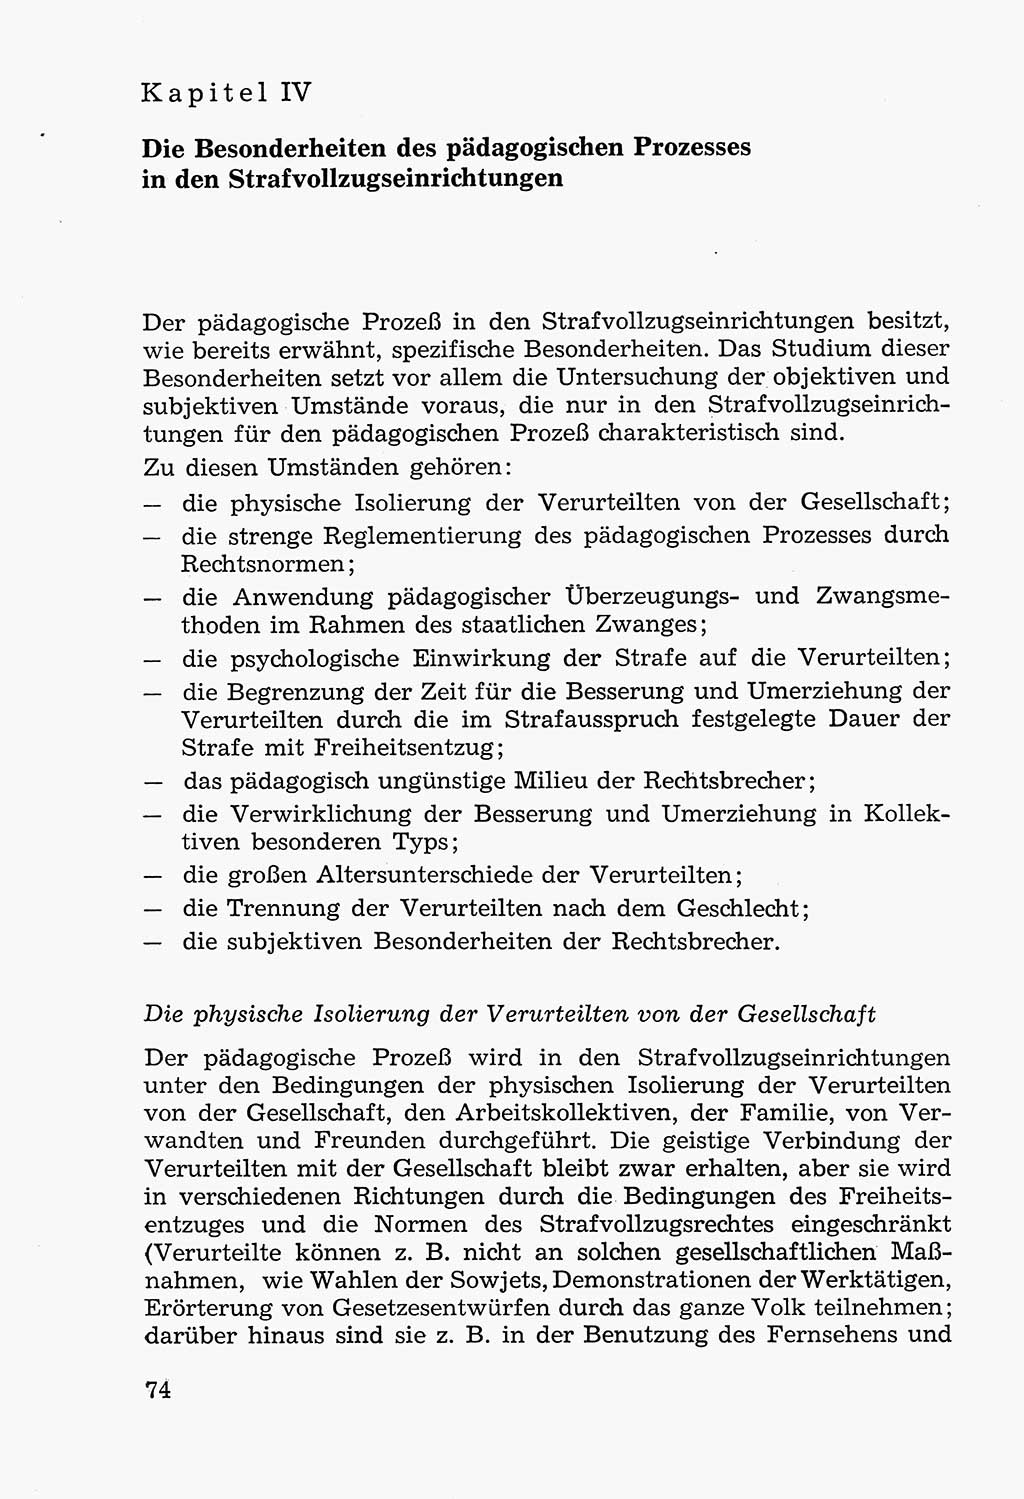 Lehrbuch der Strafvollzugspädagogik [Deutsche Demokratische Republik (DDR)] 1969, Seite 74 (Lb. SV-Pd. DDR 1969, S. 74)